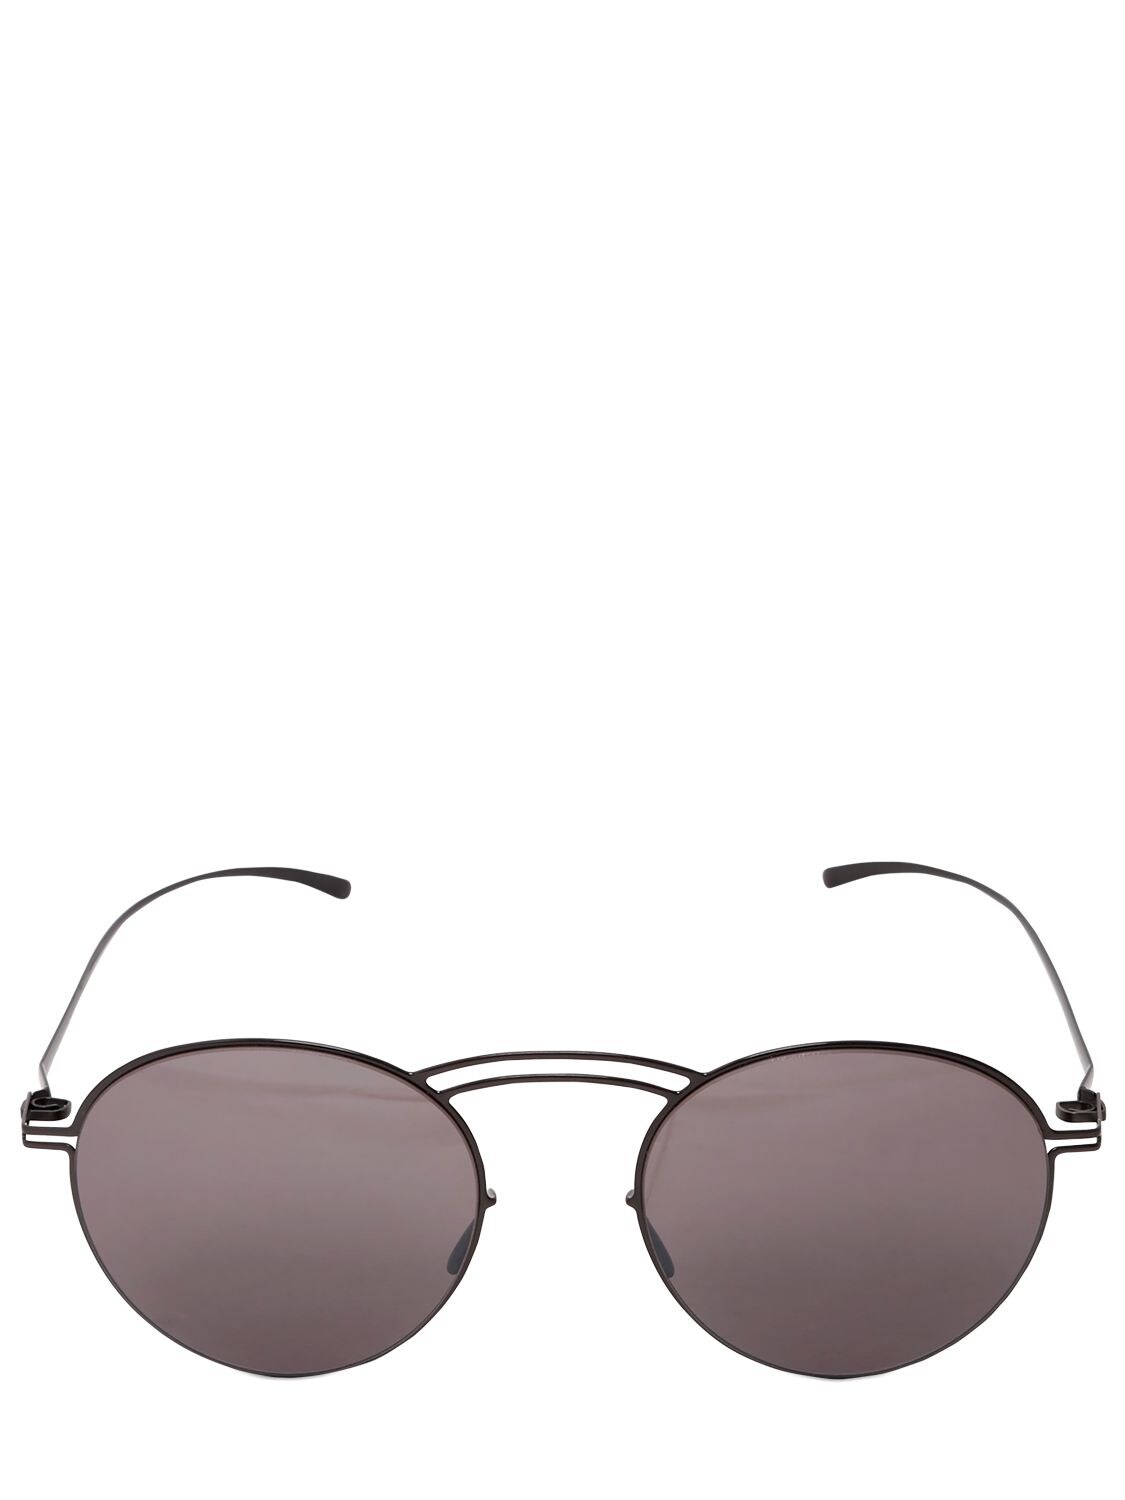 Mykita Maison Margiela Round Sunglasses In Dark Grey